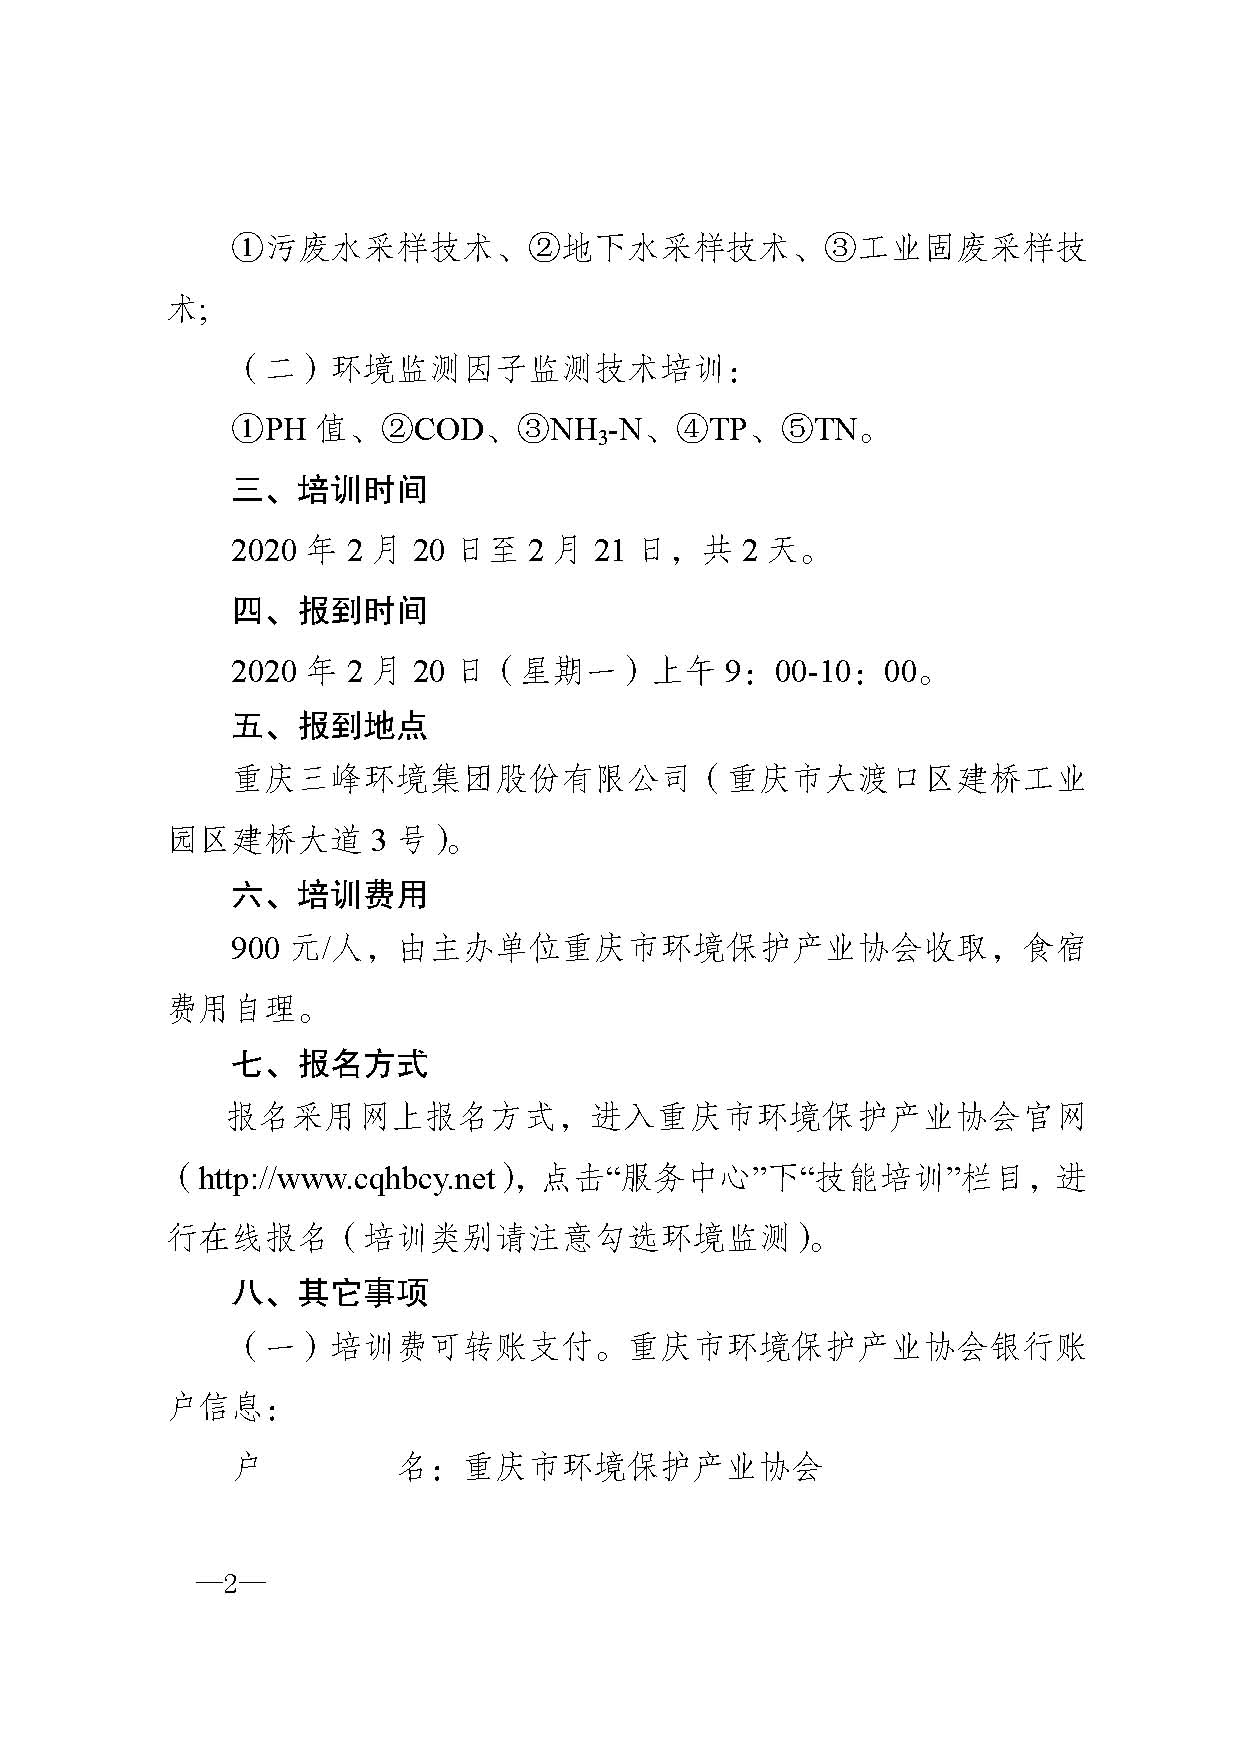 重庆市环境保护产业协会关于举办2020年第一期环境监测技术人员培训班的通知1_页面_2